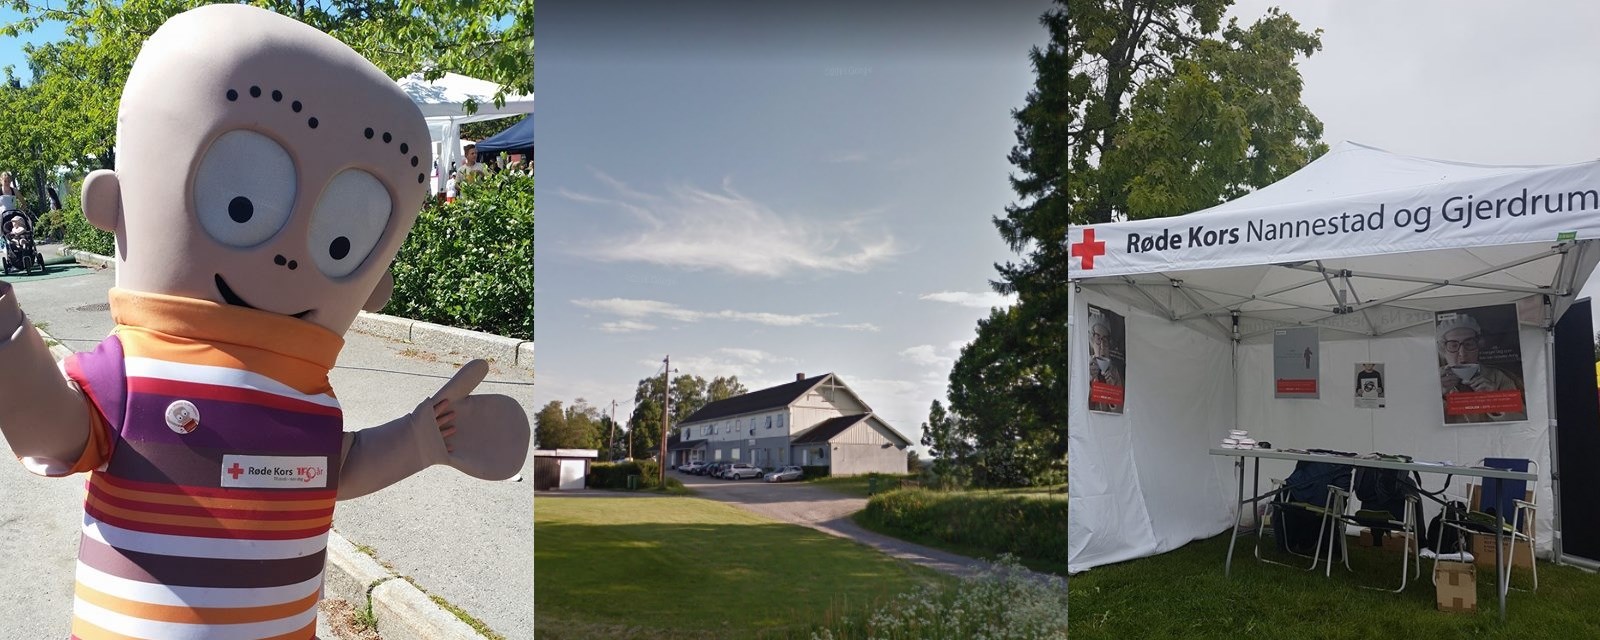 Aktiviteter i Nannestad og Gjerdrum Røde Kors